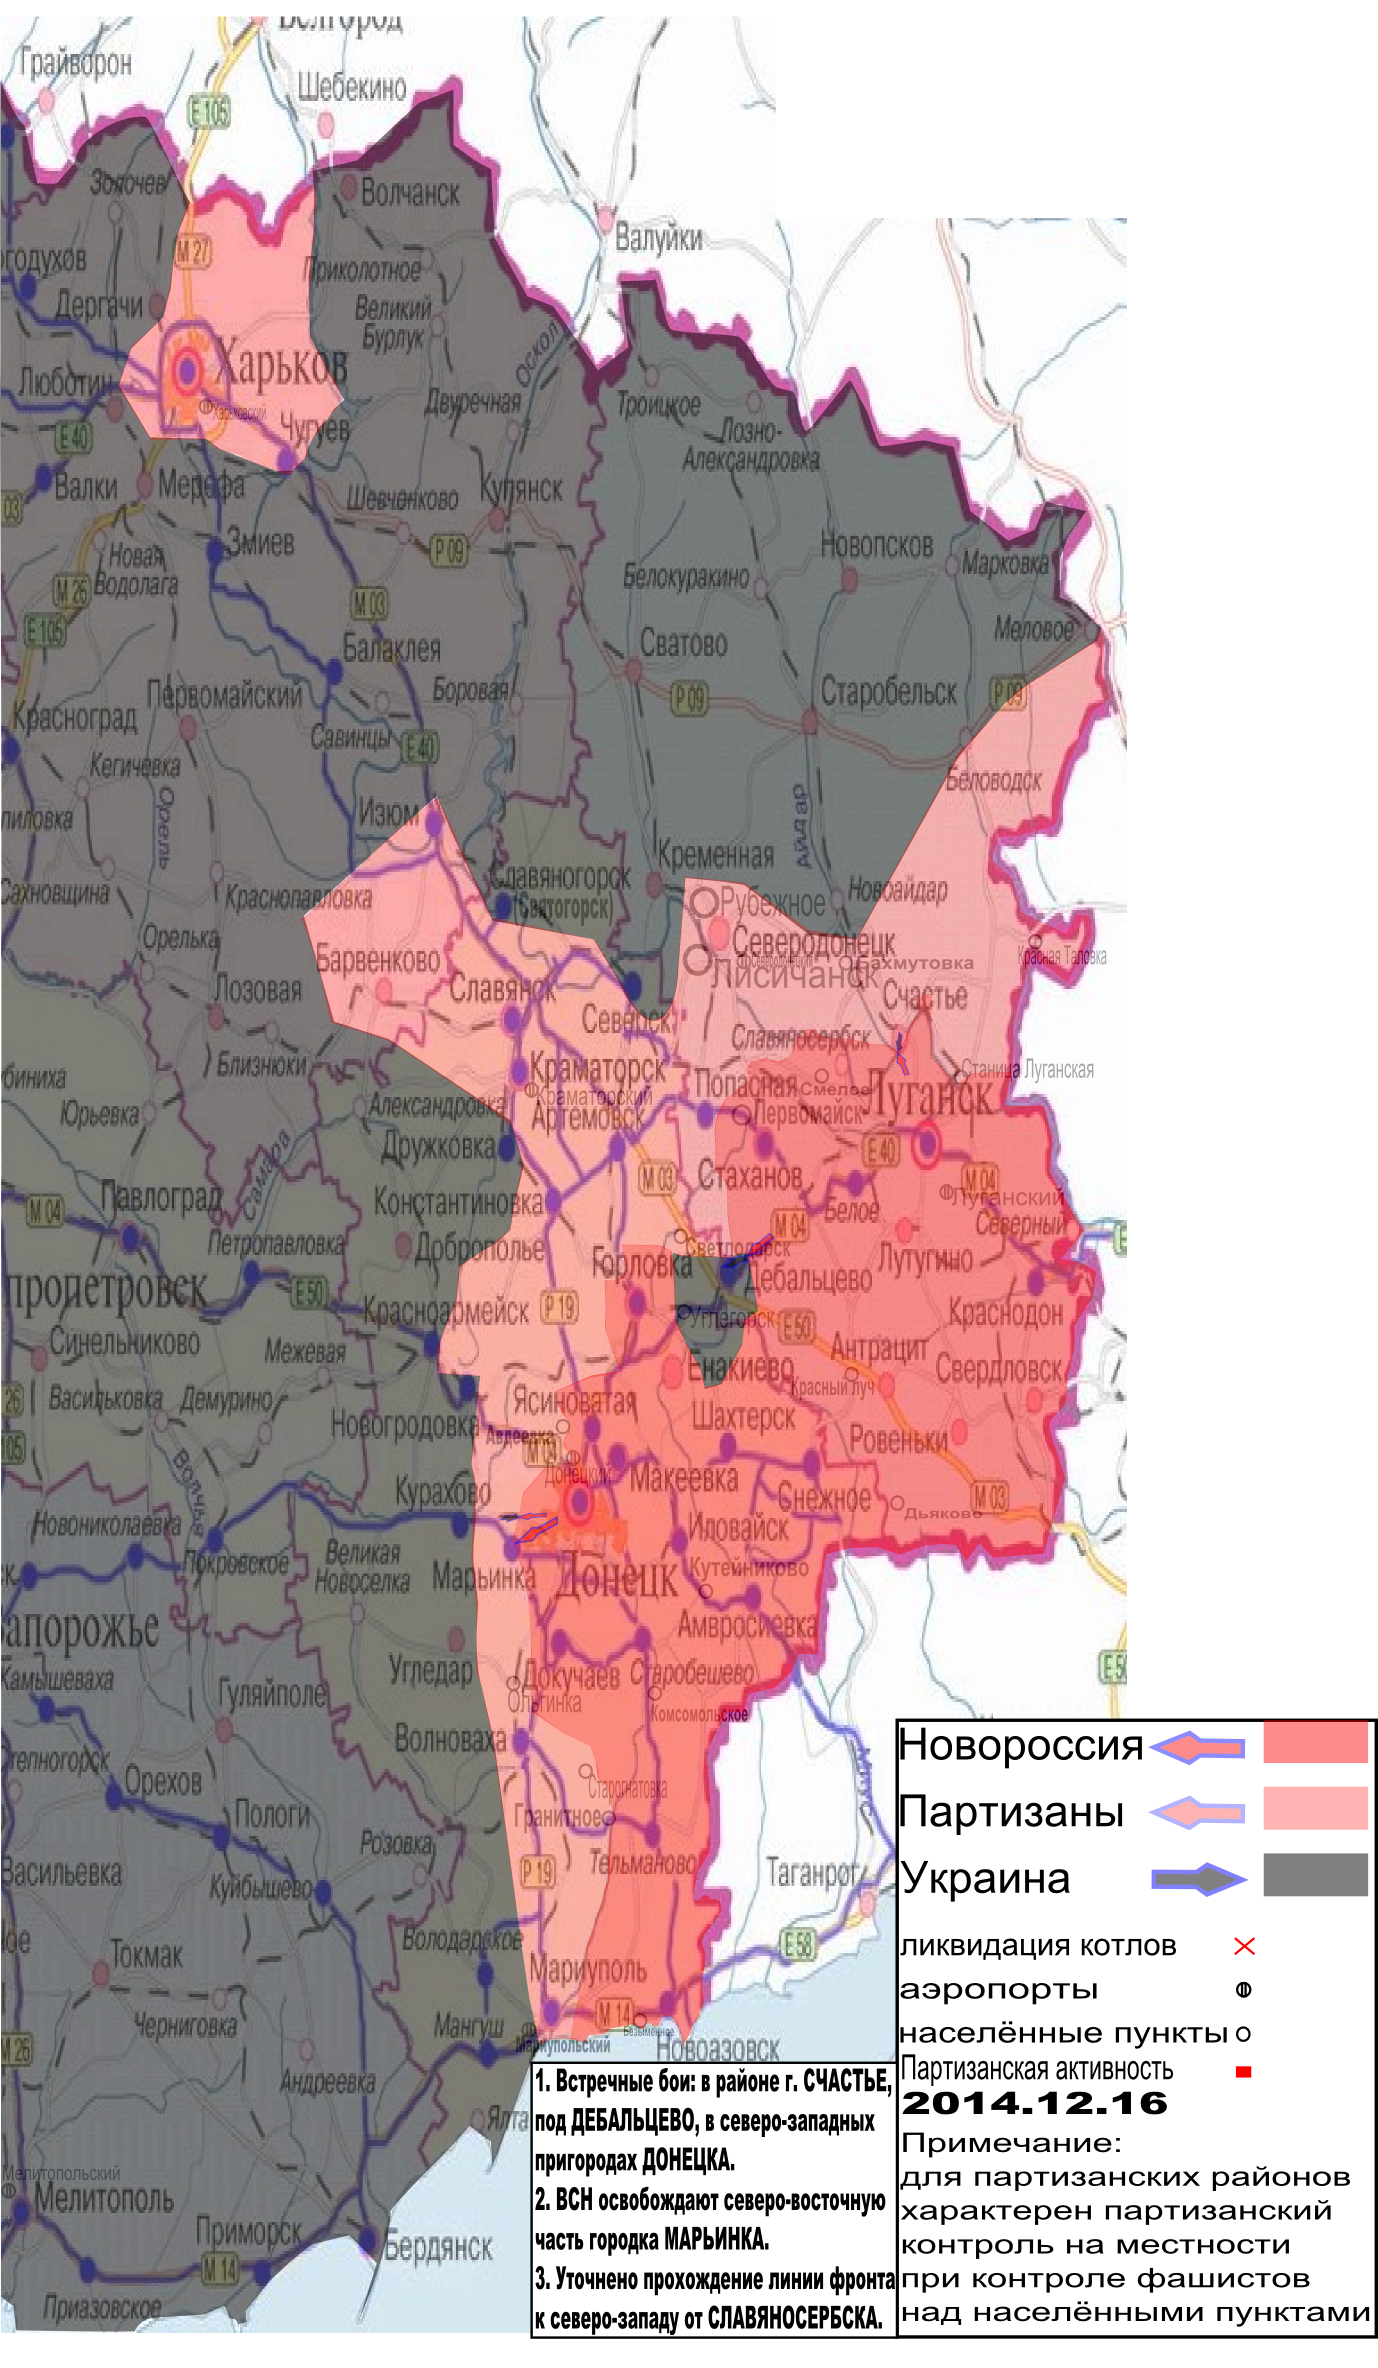 Карта боевых действий в Новороссии с партизанской активностью